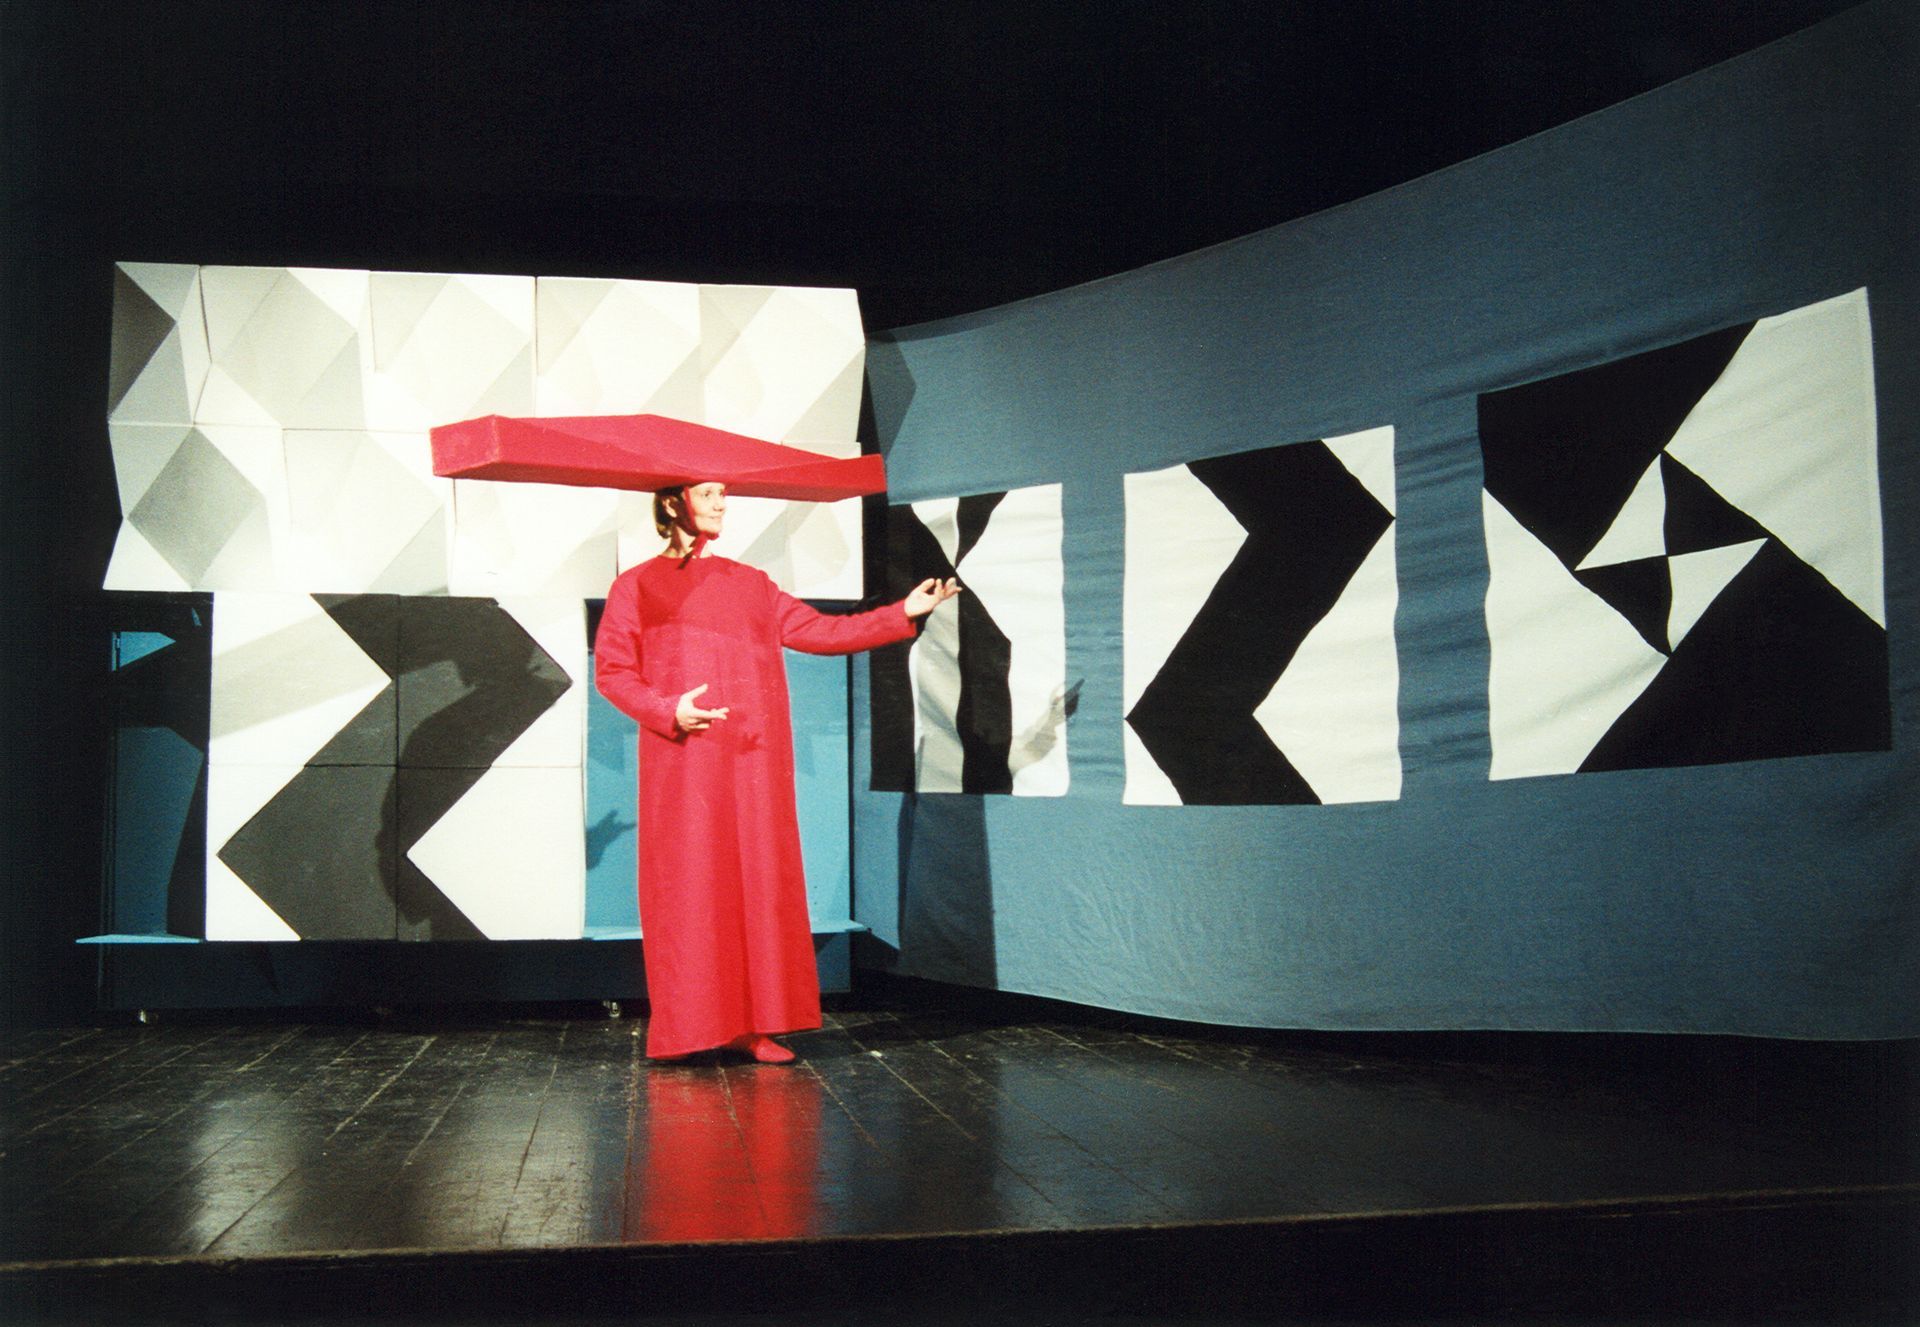 Aktorka w czerwonym kostiumie i kapeluszu w formie podłużnej bryły.